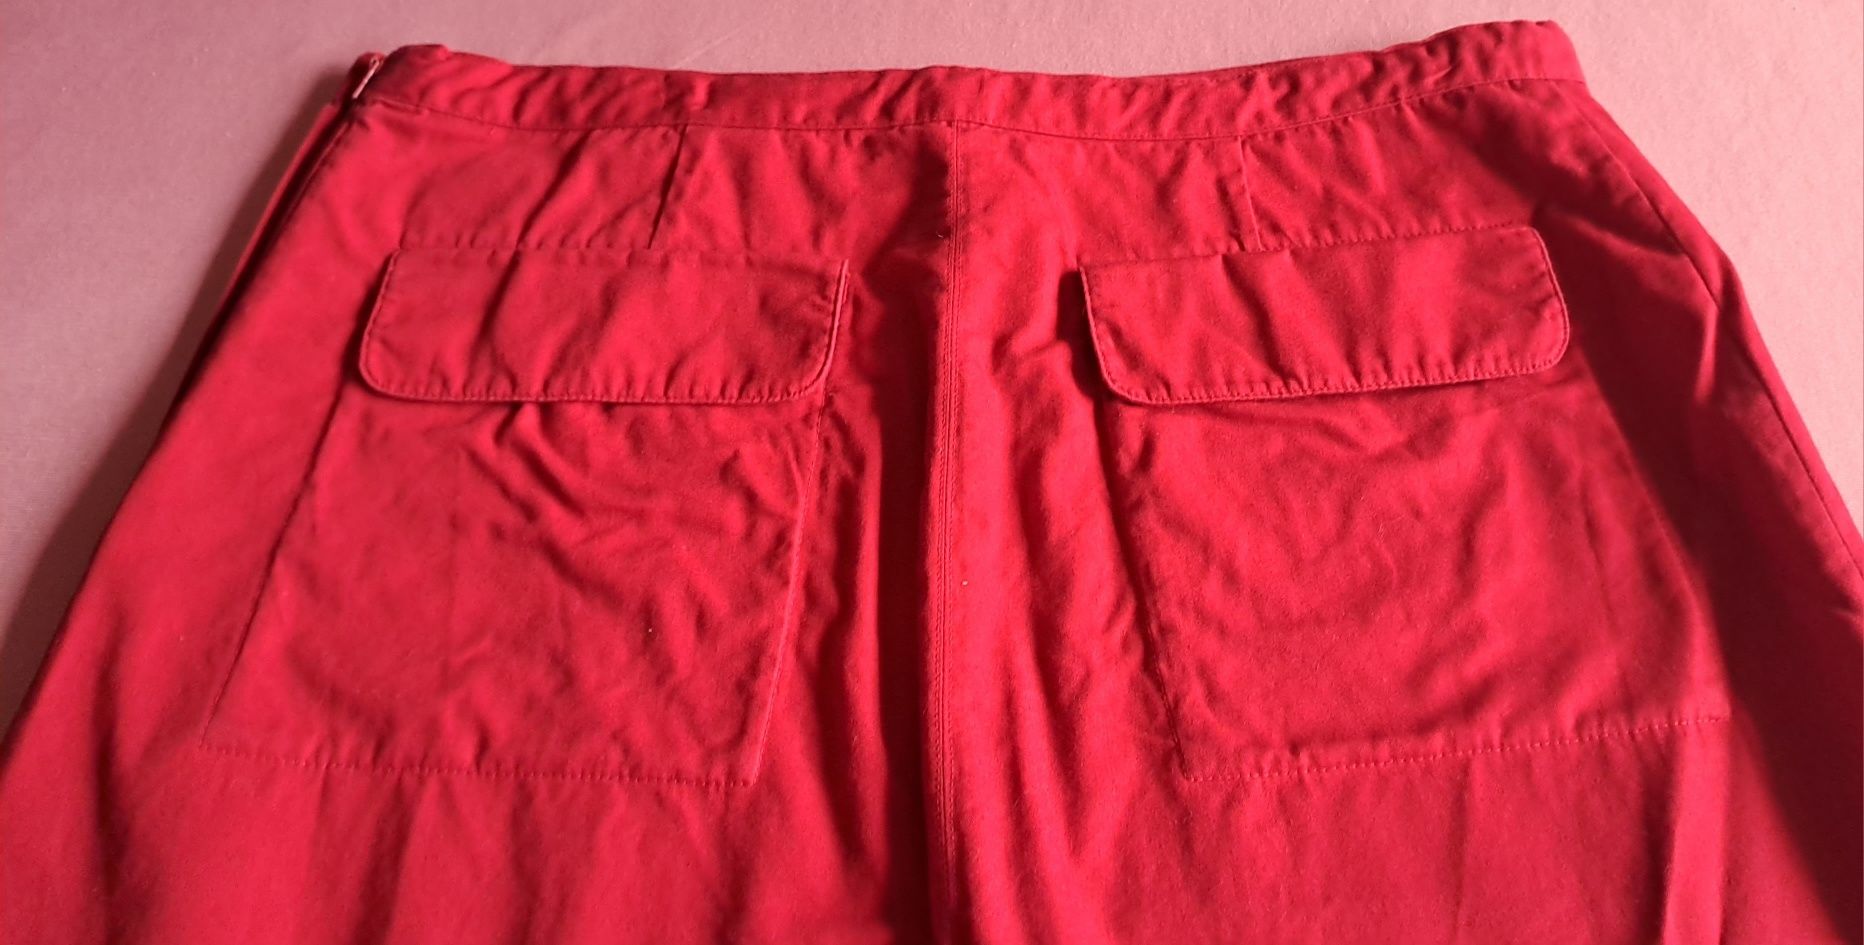 Spódnica H&M rozmiar 38, czerwona, 100% bawełana